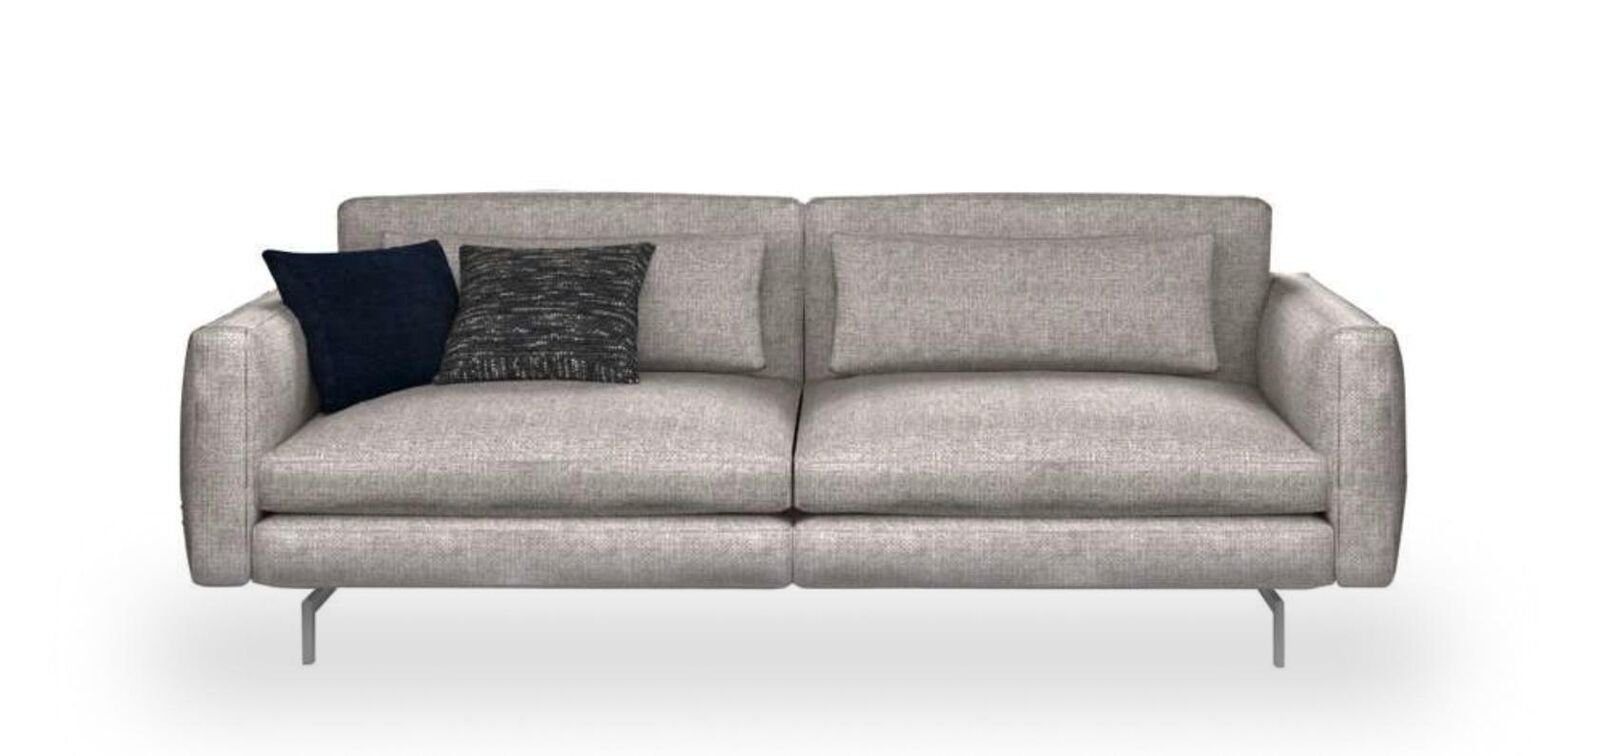 JVmoebel Sofa Dreisitzer Couch Sofas, Teile, Moderne Made Textil 1 in Wohnzimmermöbel Europa